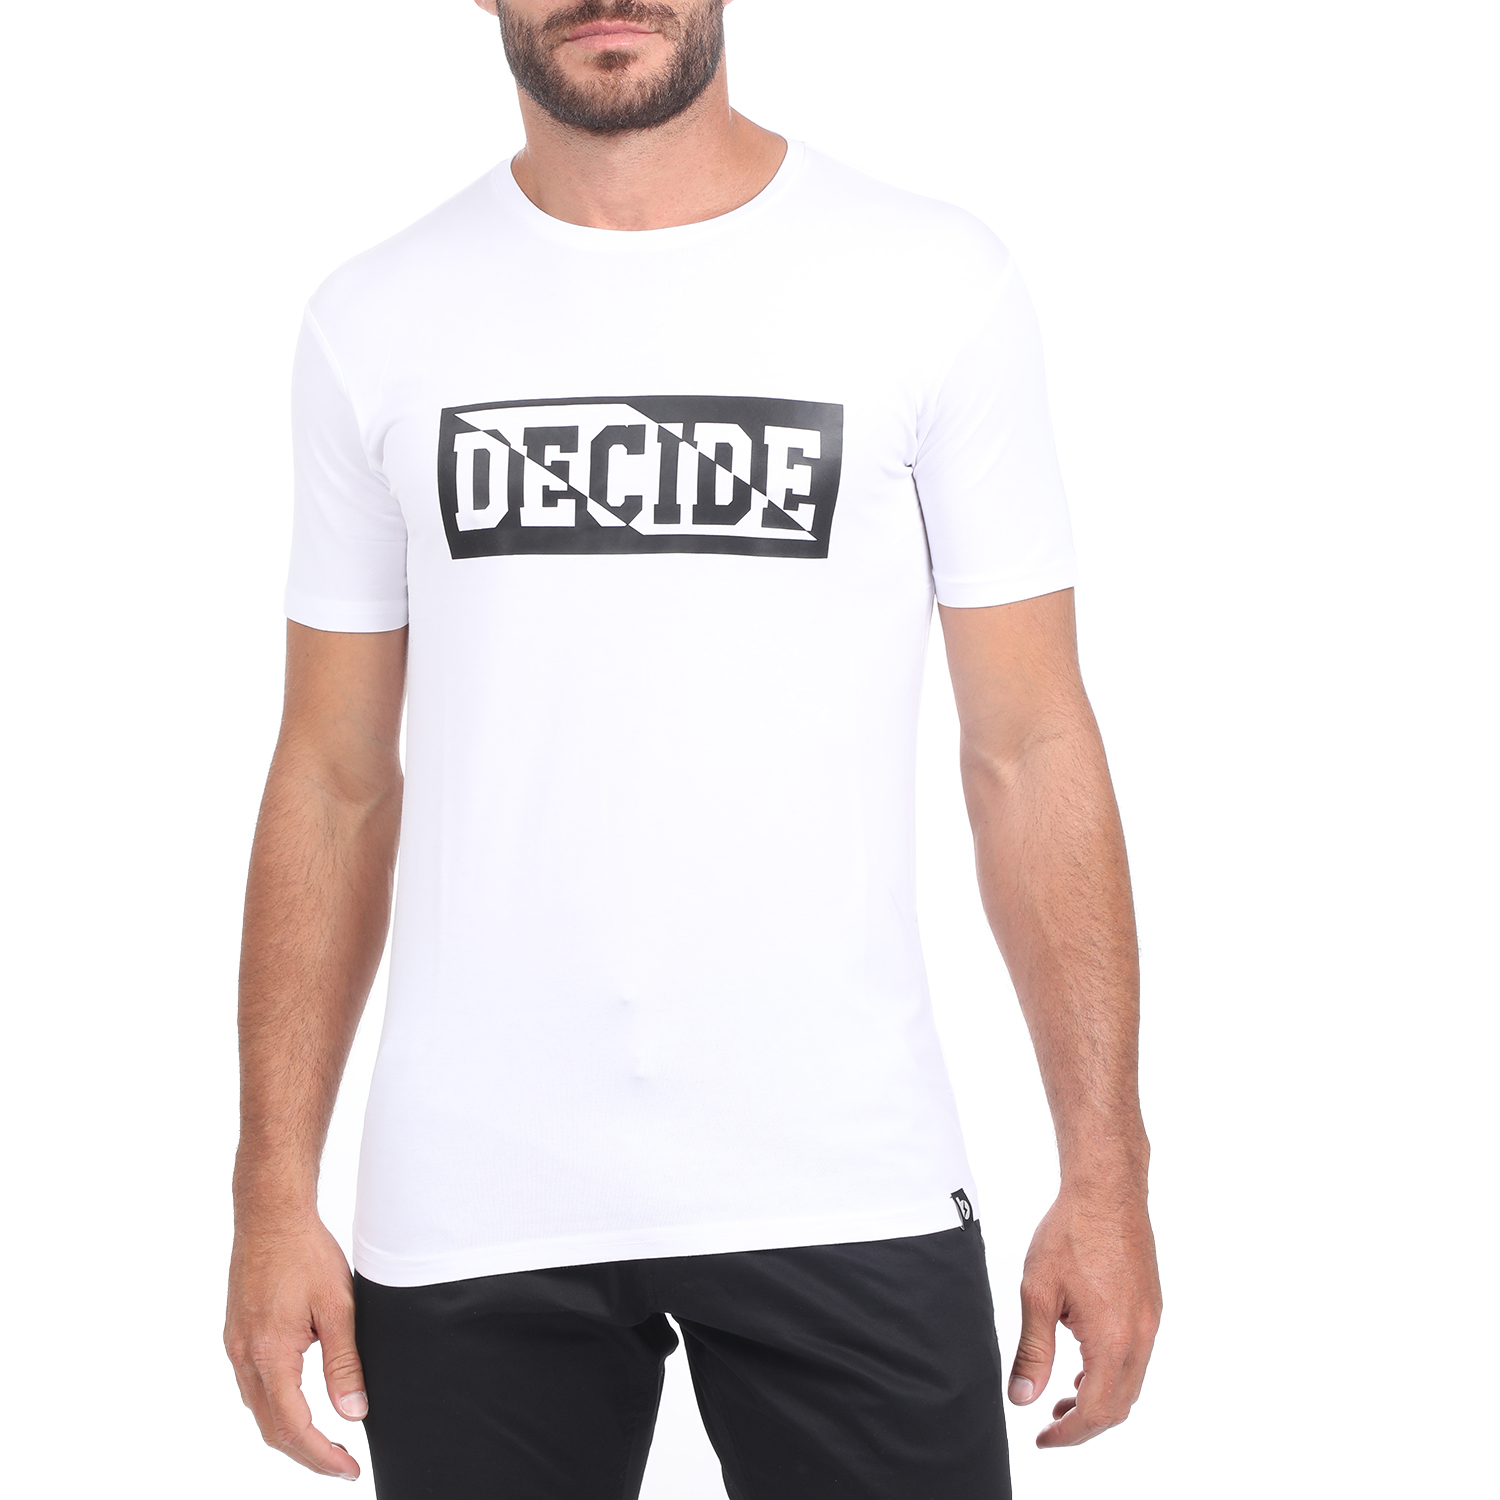 Ανδρικά/Ρούχα/Μπλούζες/Κοντομάνικες BATTERY - Ανδρικό t-shirt BATTERY MODAL λευκό